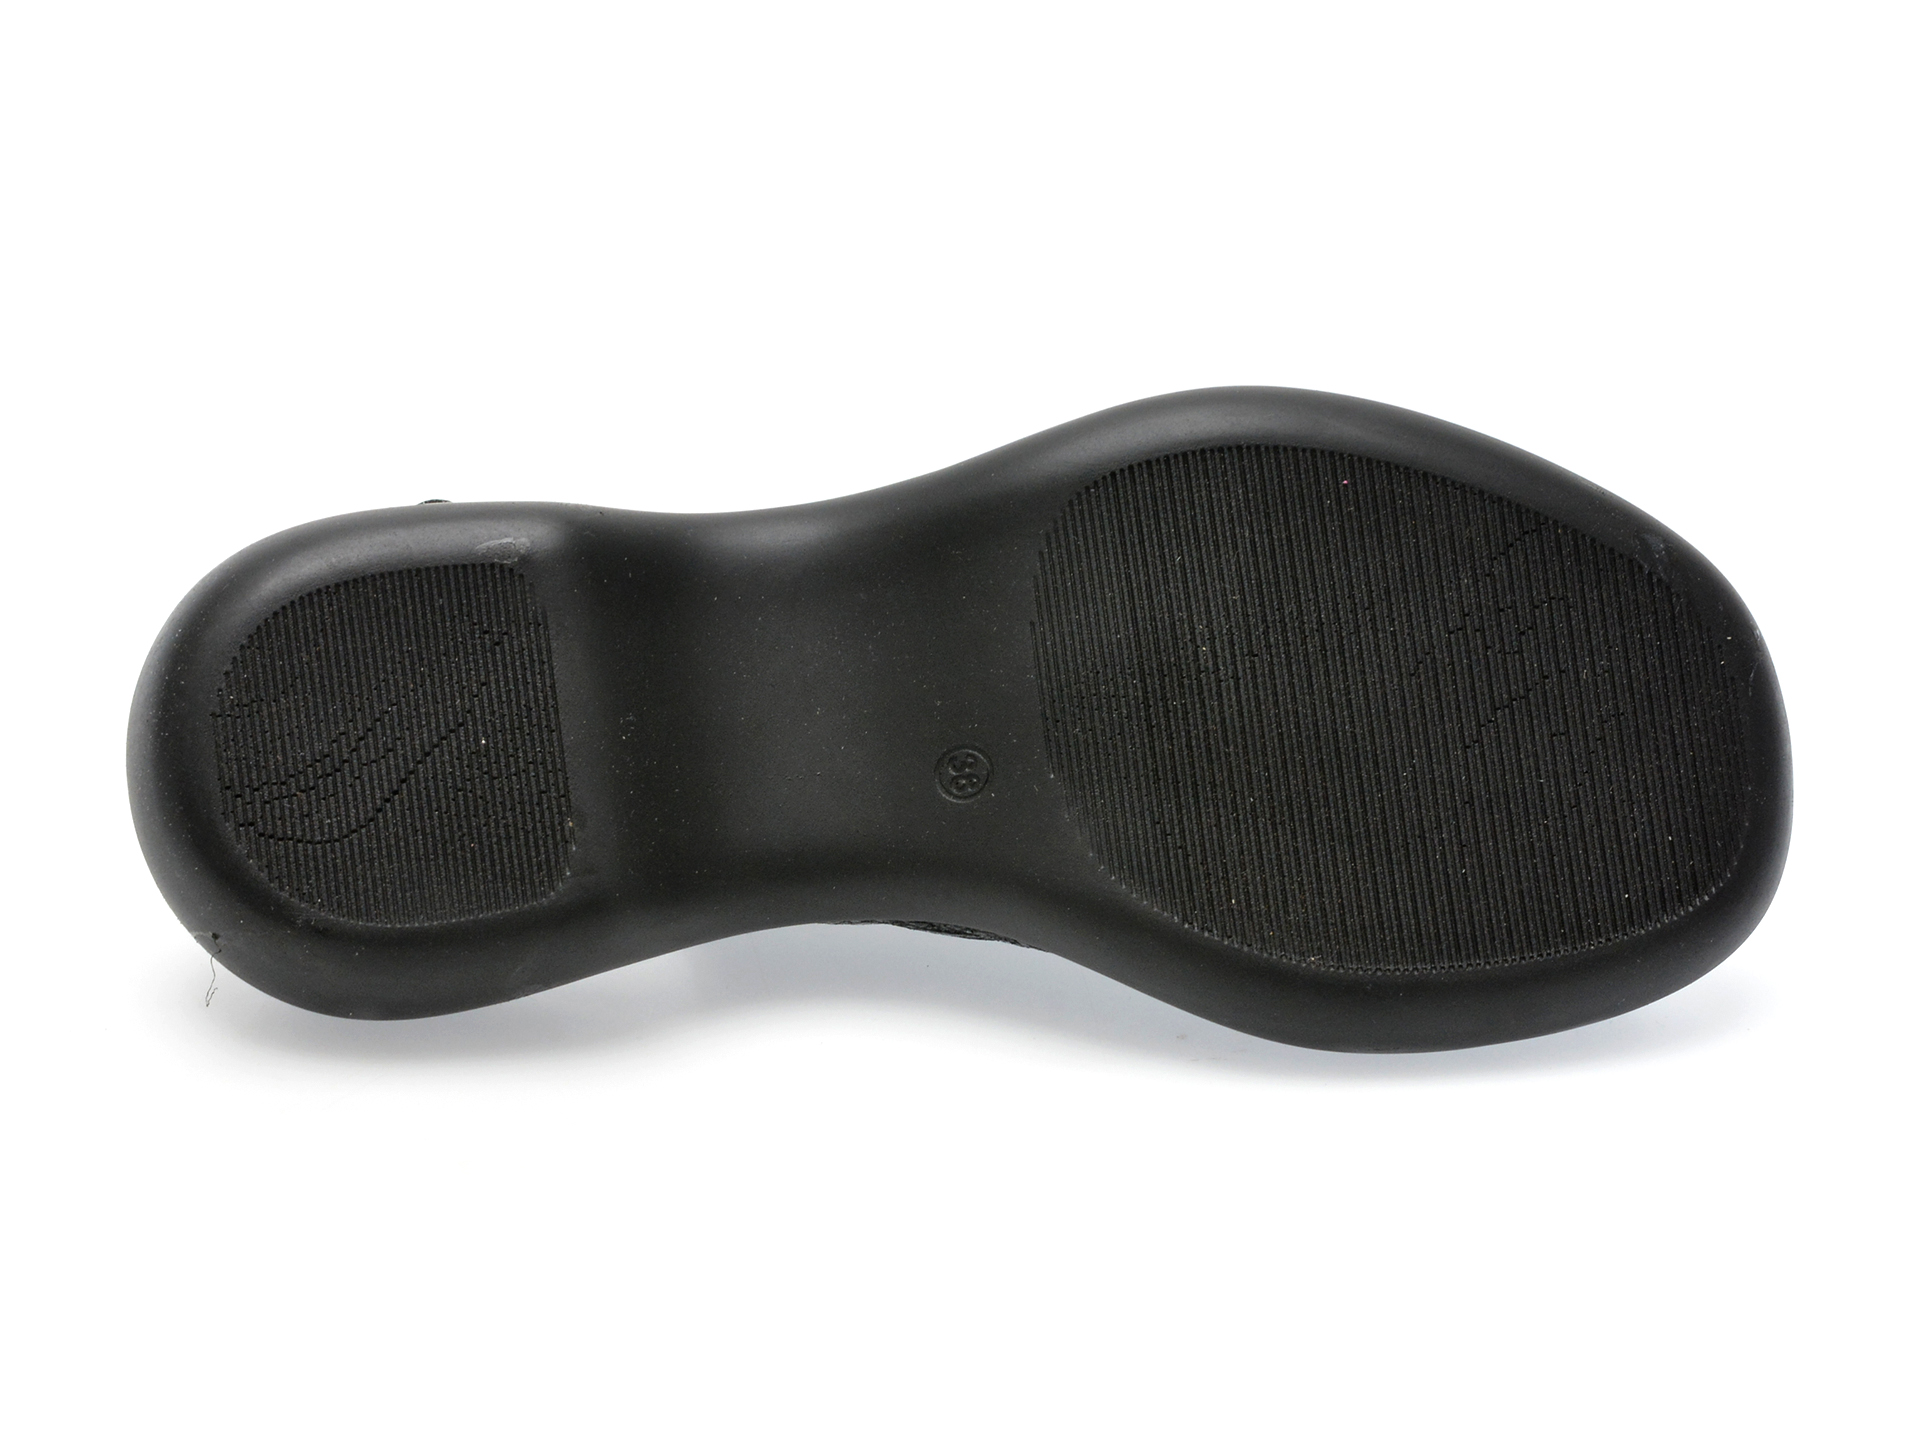 Sandale MAGRIT negre, 102, din piele naturala lacuita